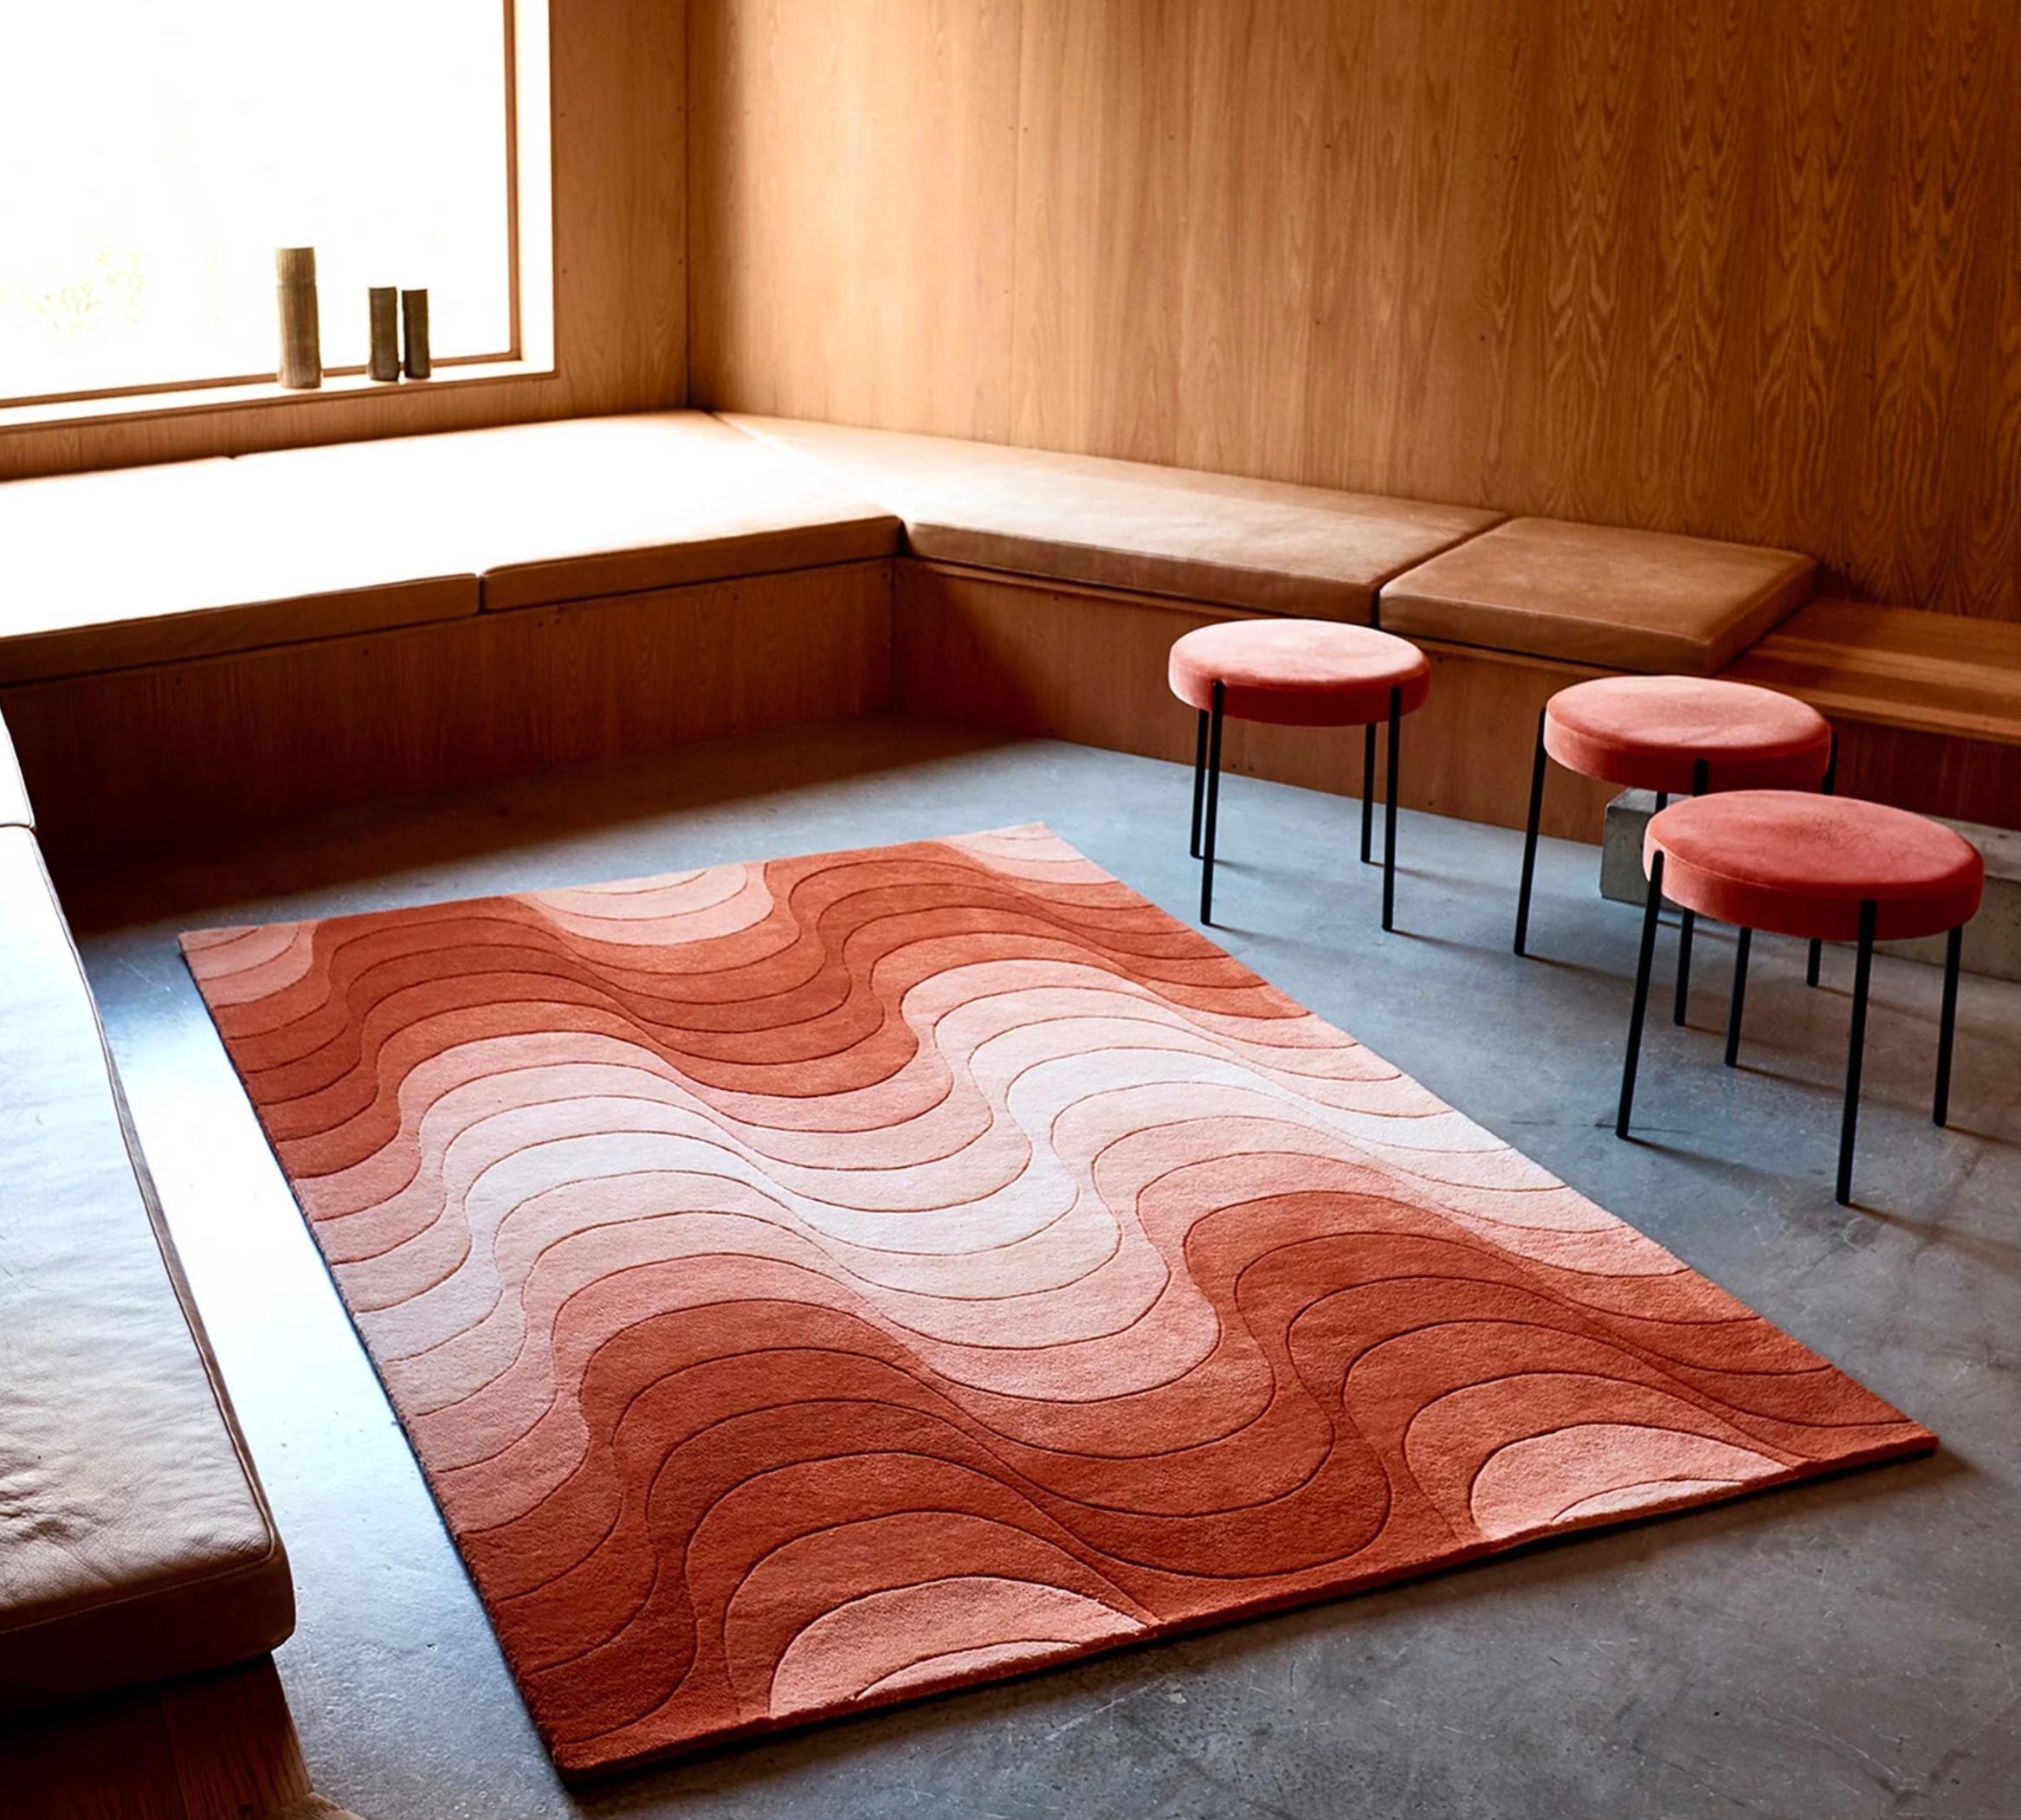 Verner Panton 'Wave' Teppich 240 x 170cm für Verpan. Aktuelle Produktion.

Teppiche verleihen einem Raum nicht nur eine skulpturale Note, sondern dienen auch dazu, die Dimensionen des Raums zu betonen und/oder zu verändern. Alle Verpan-Teppiche